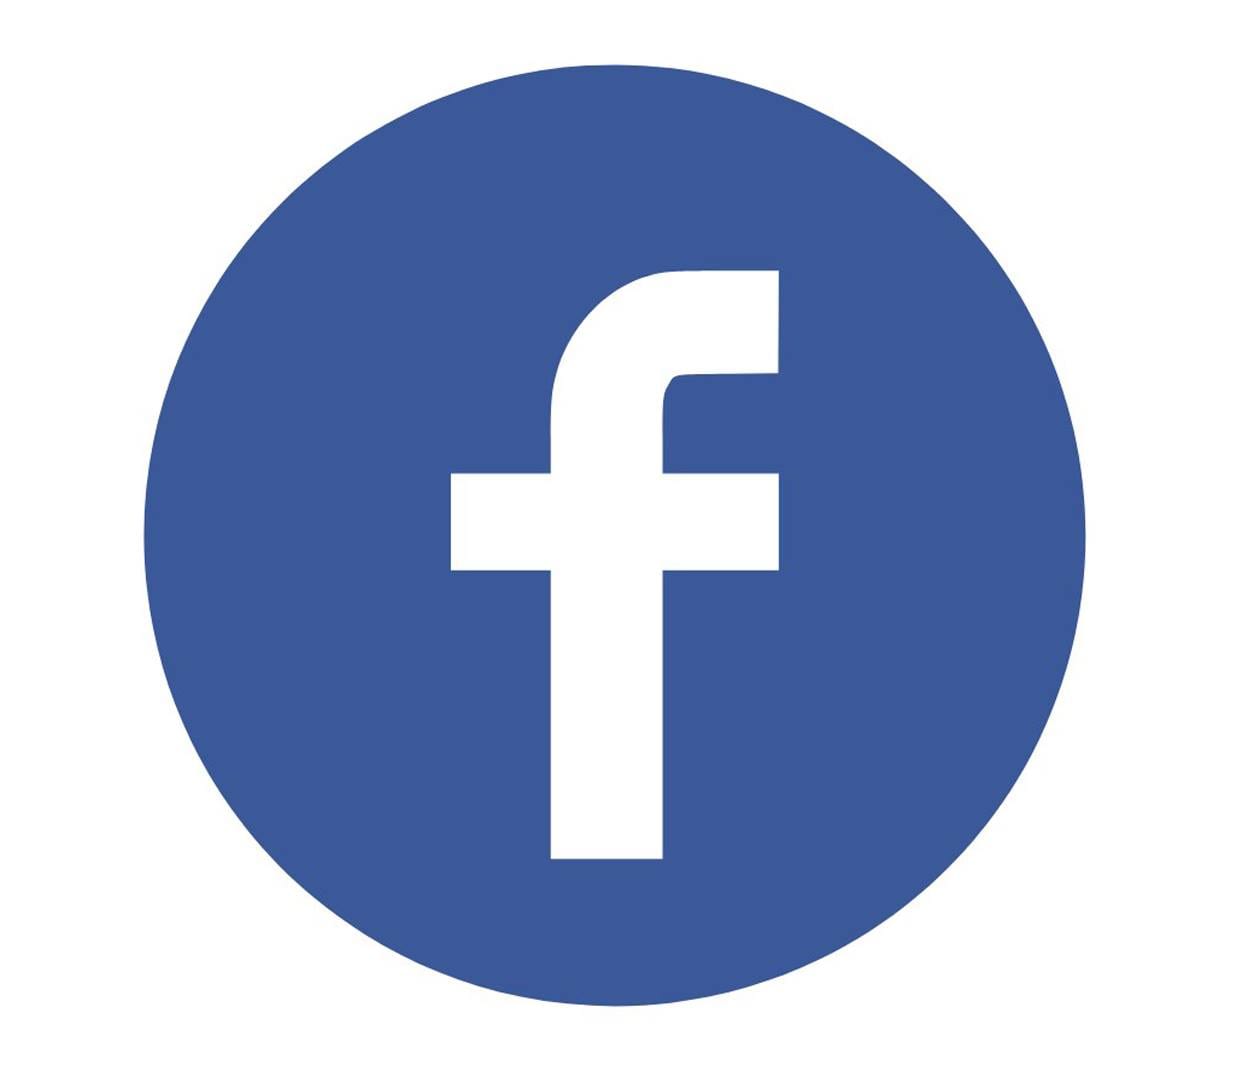 فيسبوك تتيح تصدير منشوراتك النصية إلى مستندات جوجل أو تدوينات ووردبريس وبلوغر facebook